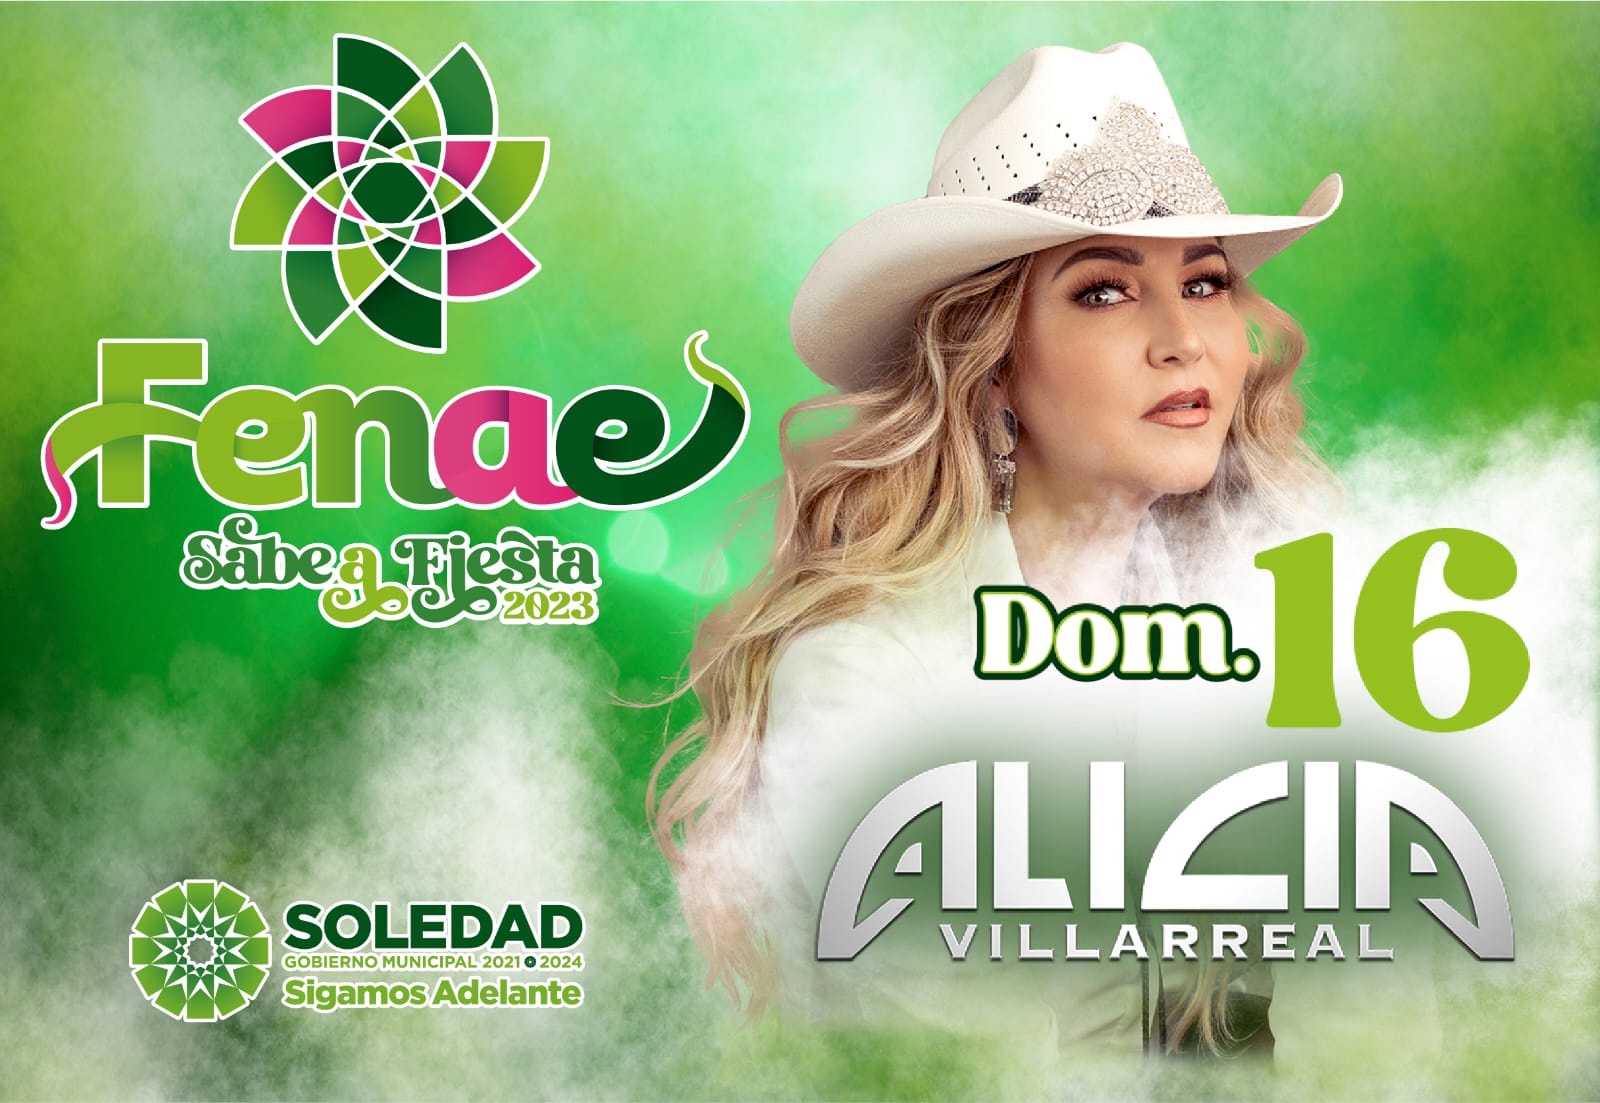 Con éxitos como “Te quedo grande la yegua” llega Alicia Villarreal a la FENAE 2023